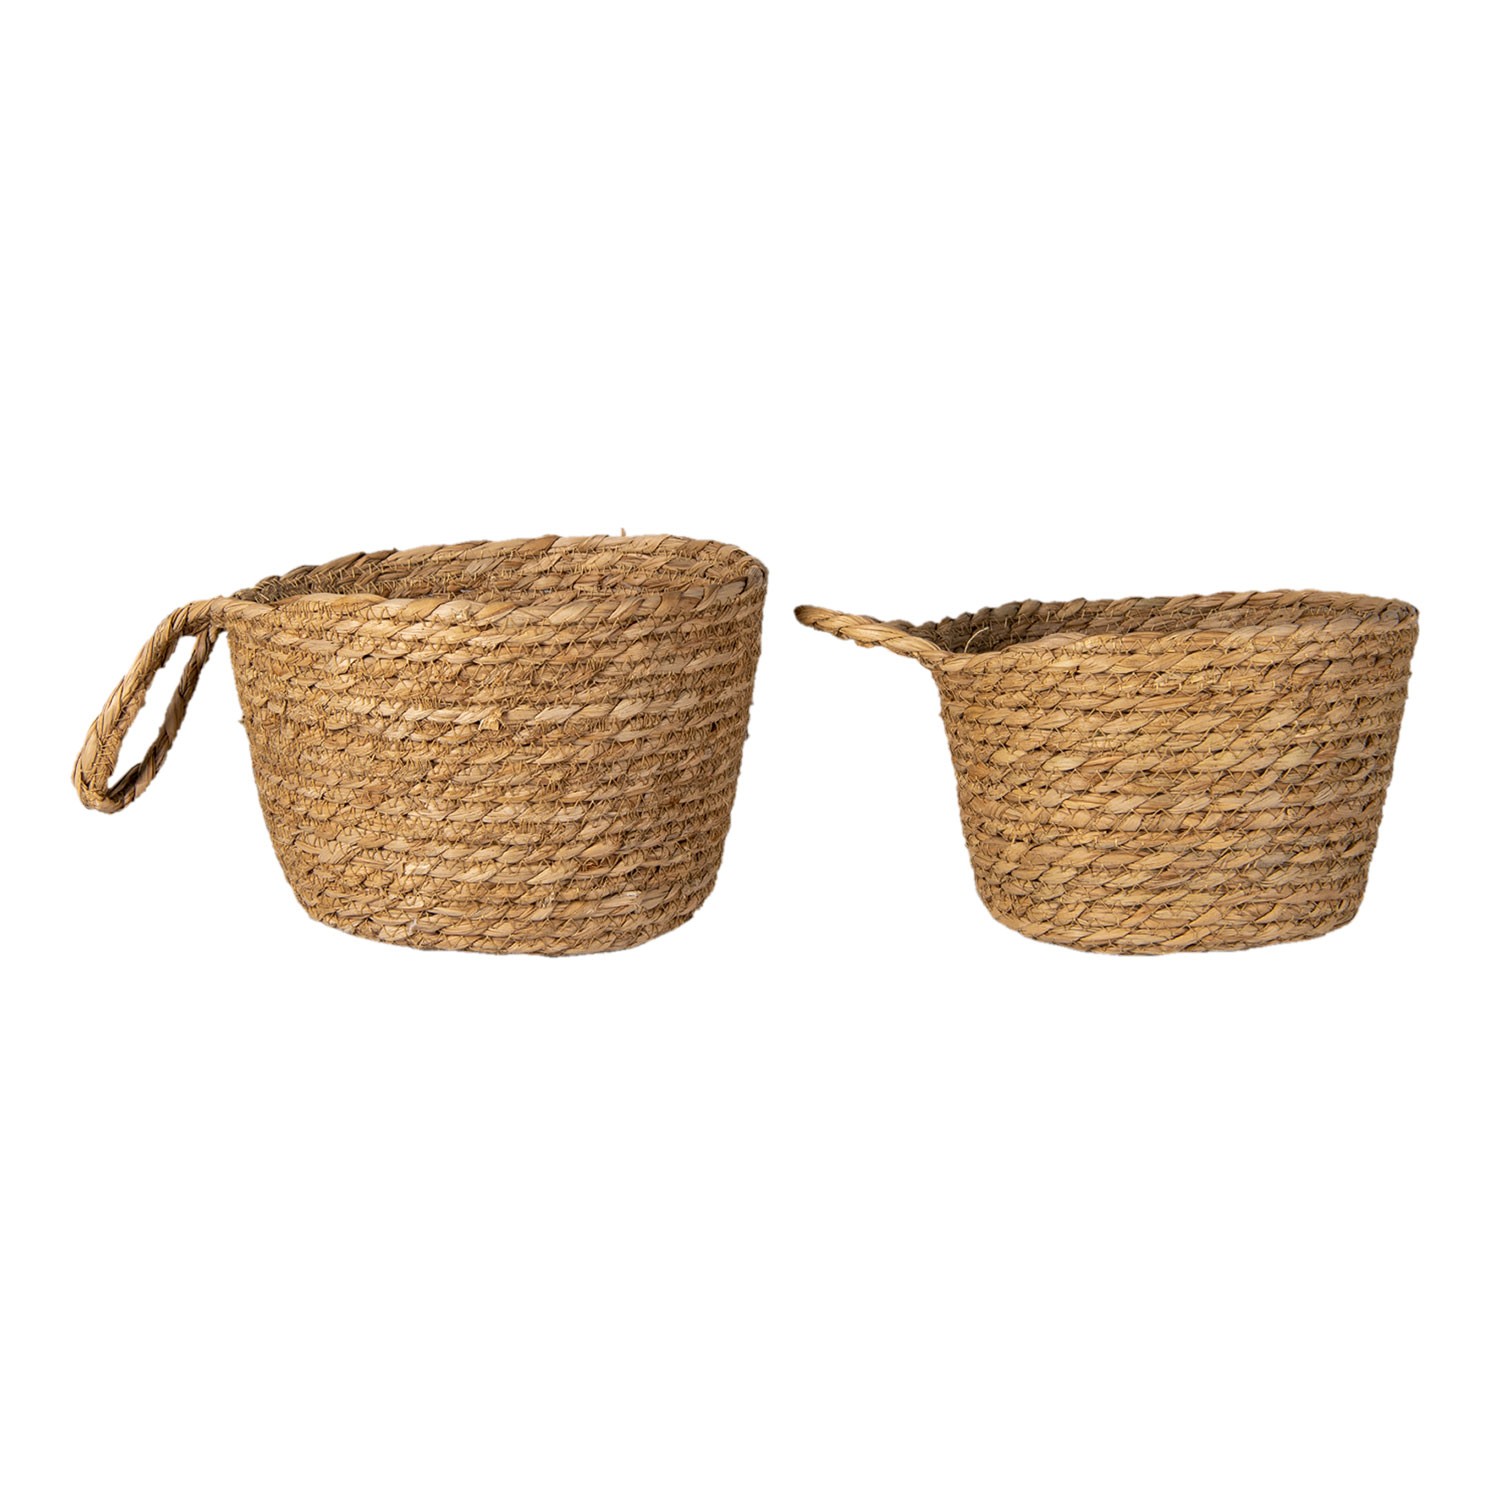 2 ks pletených dekorativních košíků Amar s uchem - Ø 24*15 / Ø 21*14 cm 6RO0533